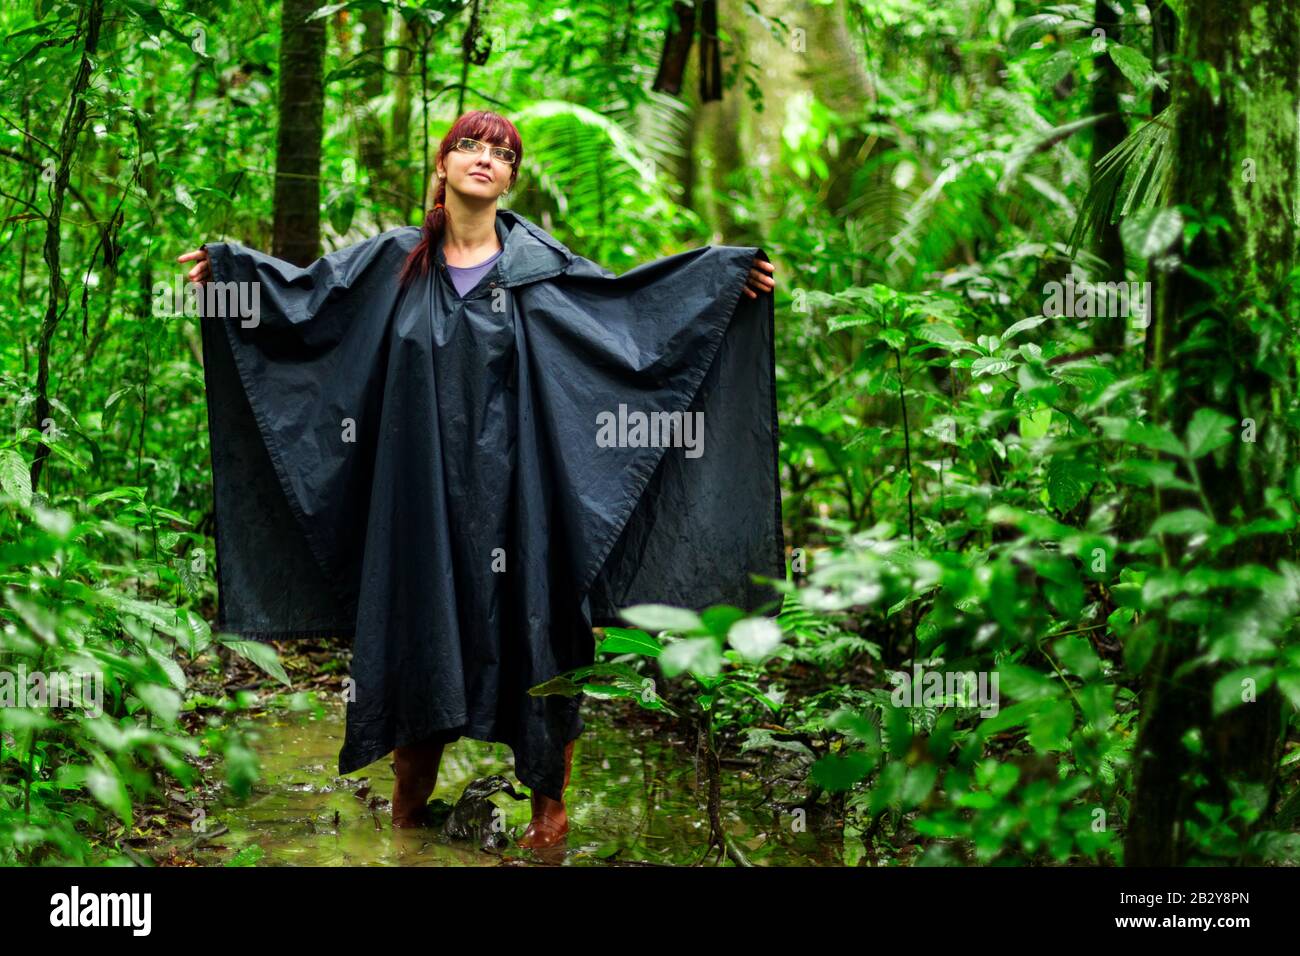 Touristenfrau Im Amazonischen Dschungel, Die Typische Ausrüstung Und Bekleidung Für Diese Umgebung Zeigt, Regen Poncho Und Gummistiefel Stockfoto